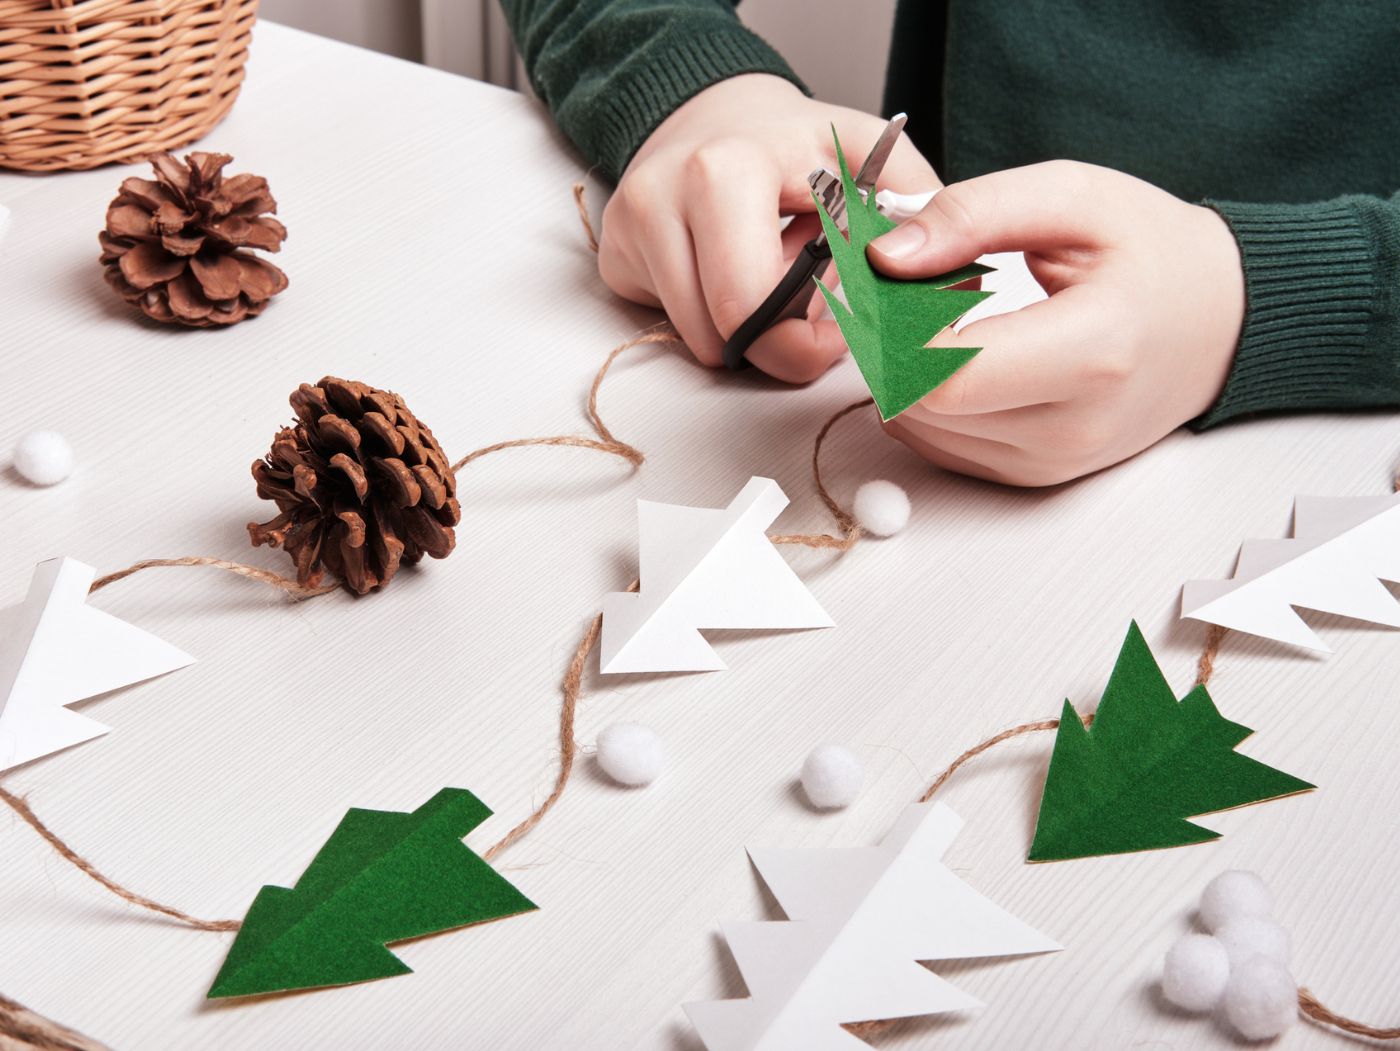 Plano de unas manos recortando cartulinas con forma de árbol de Navidad. En la mesa hay árboles de cartulina conectados por una cuerda y varias piñas sobre la mesa